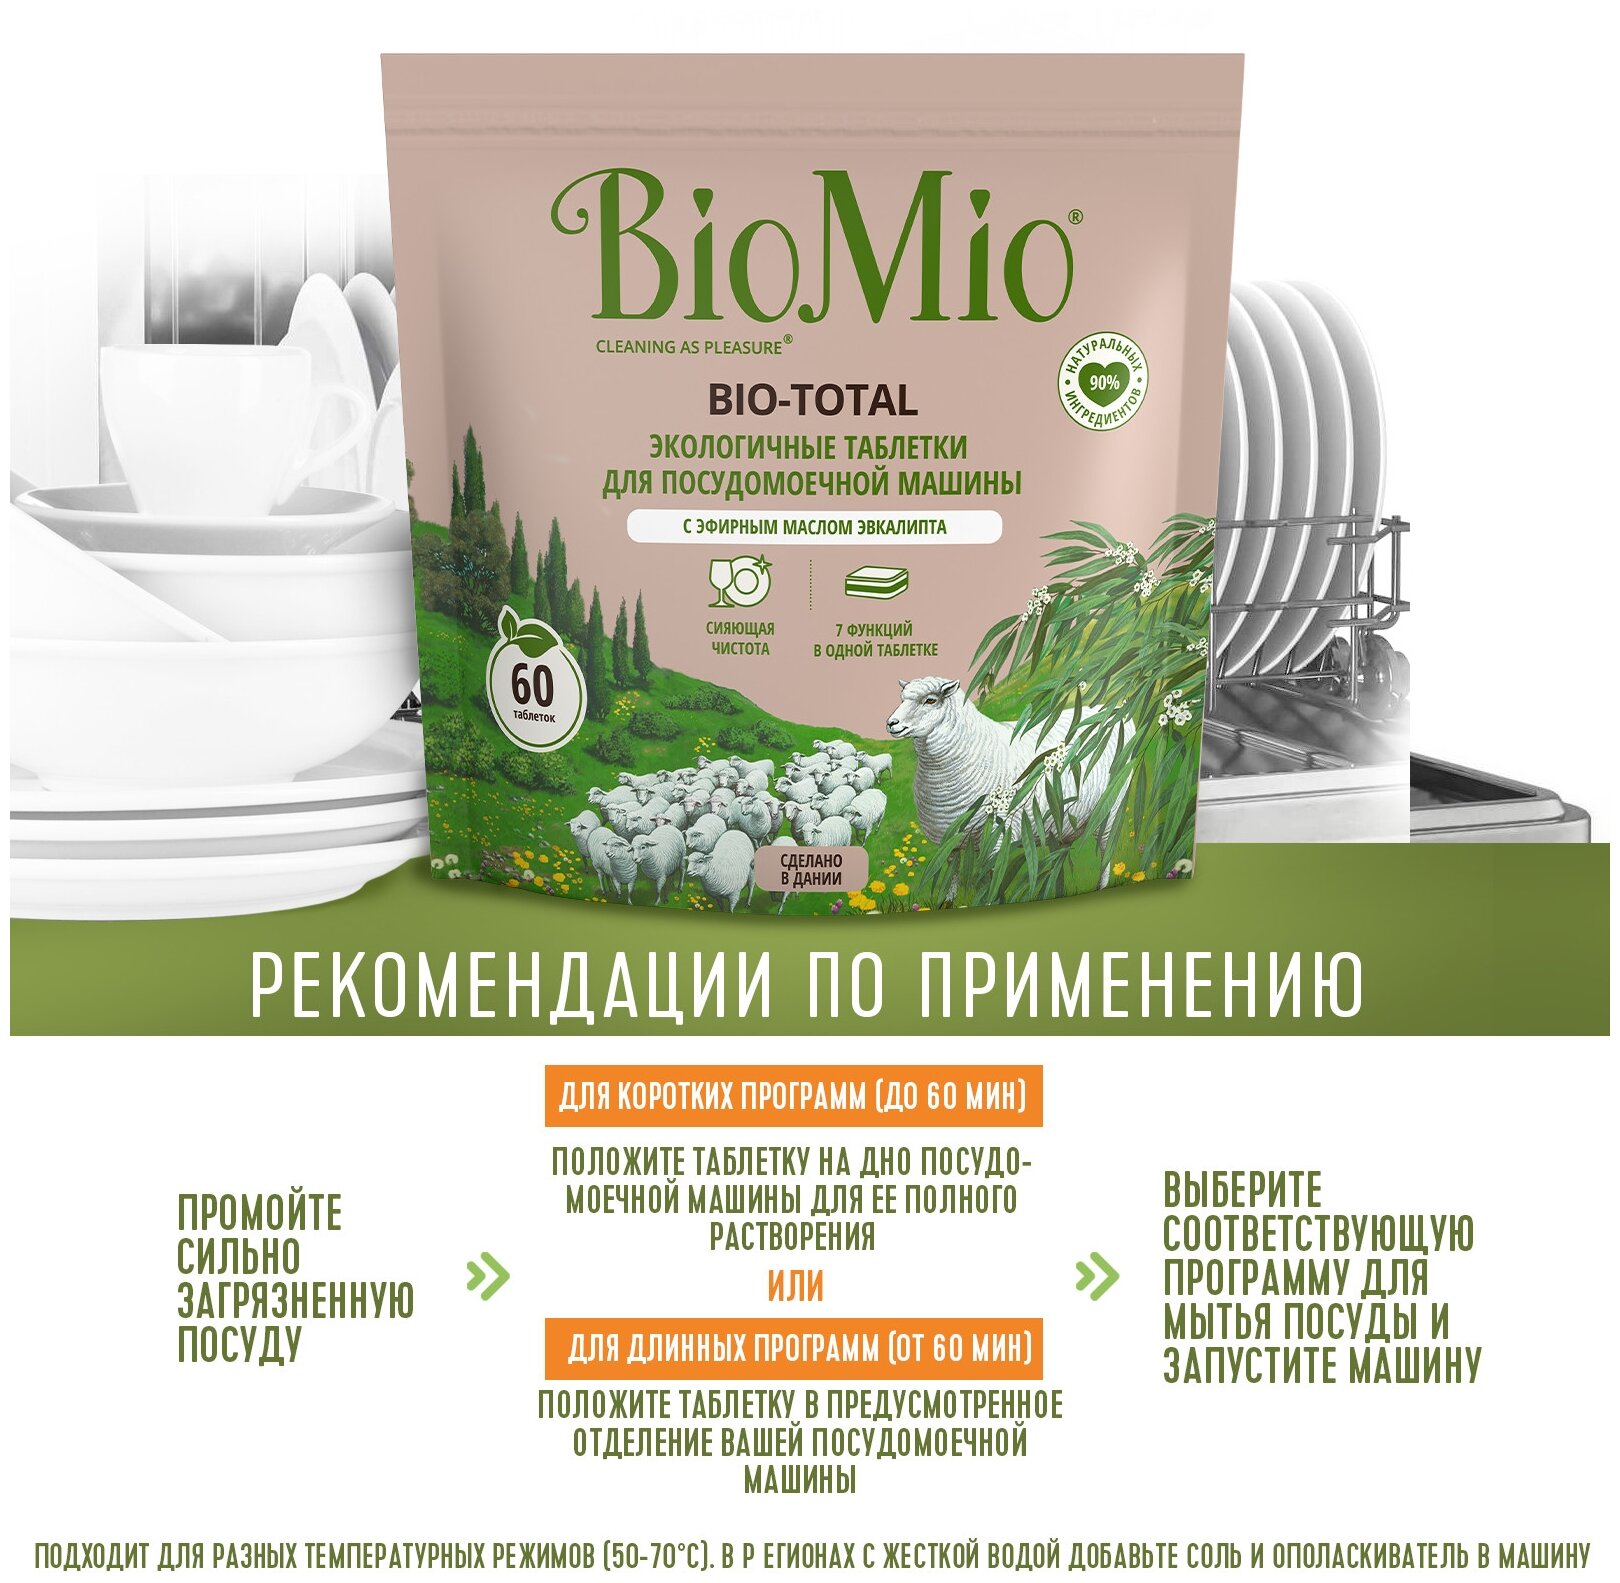 Экологичные таблетки BioMio Bio-Total 7в1 для посудомоечной машины, с эвкалиптом, 100шт. - фото №6